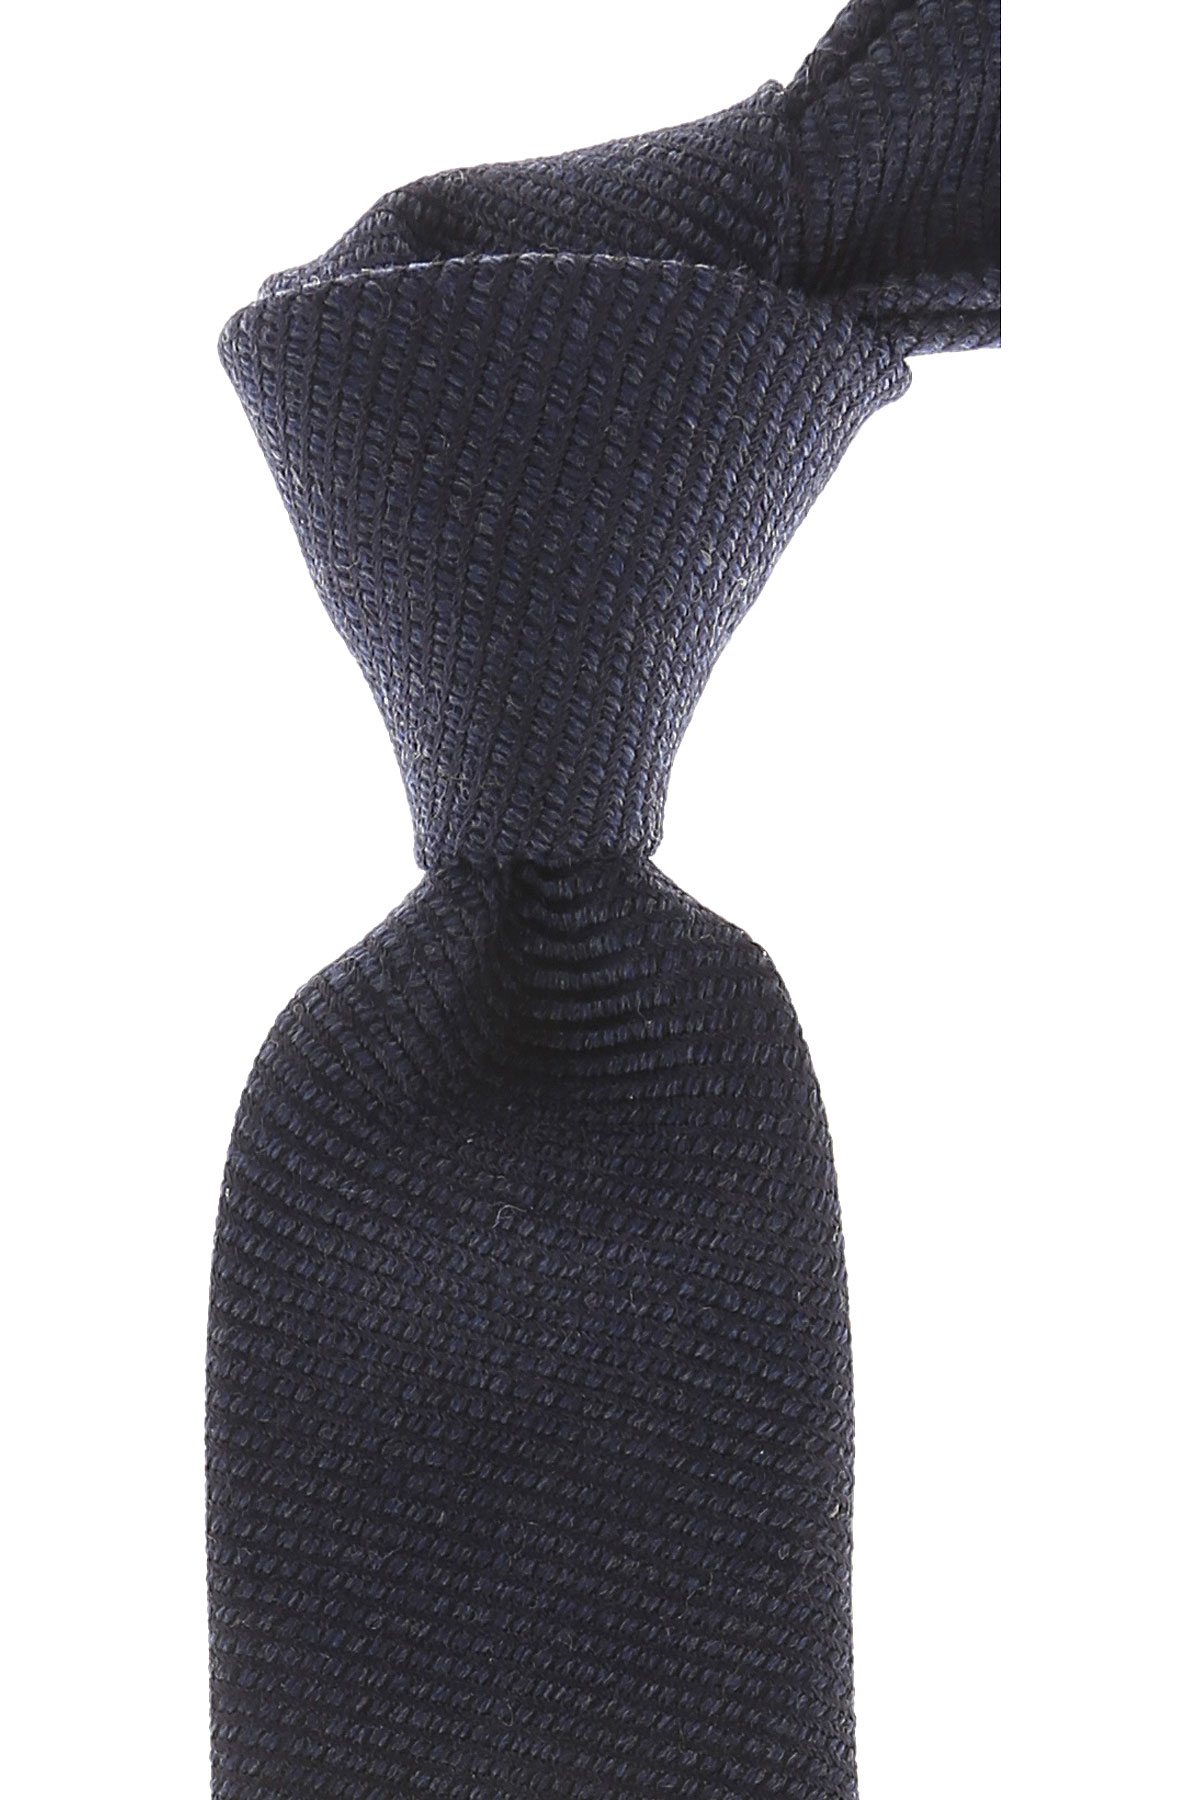 Cravates Kenzo , Mélange bleu nuit, Laine, 2017